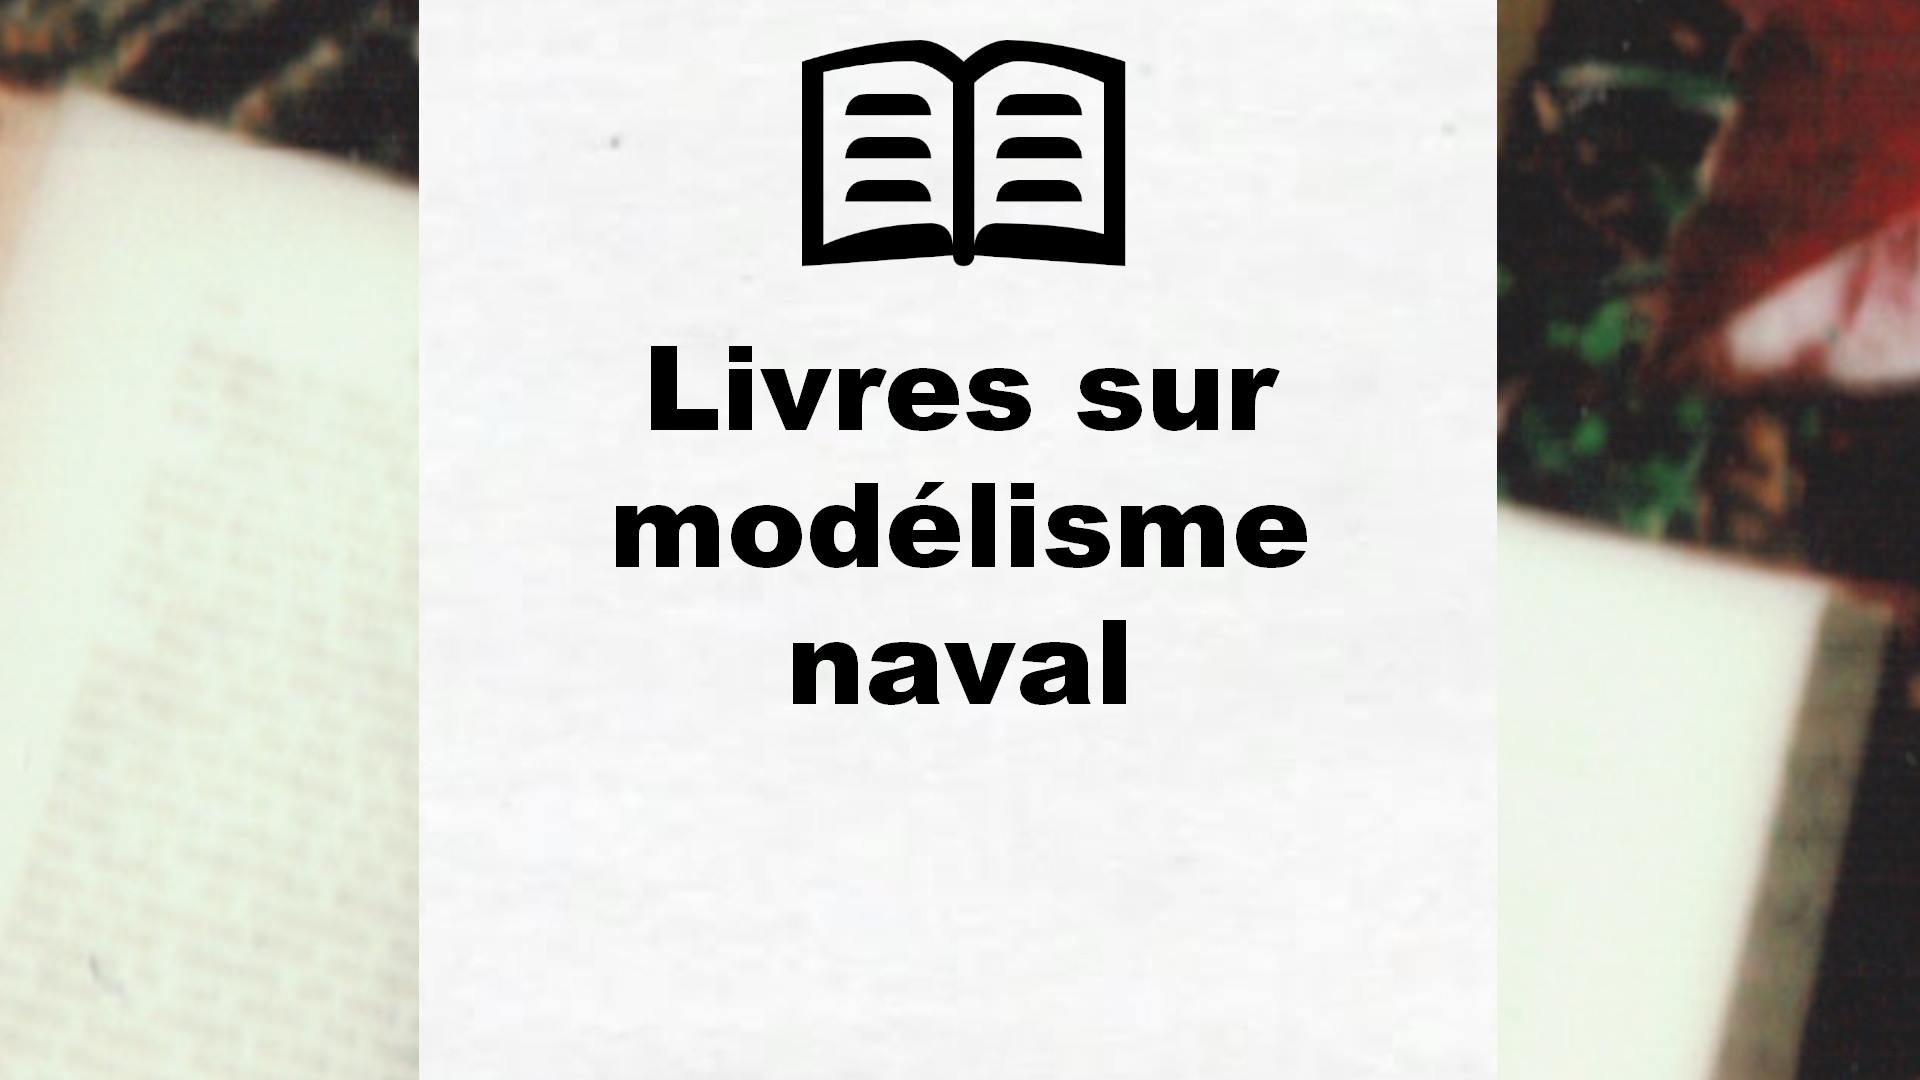 Livres sur modélisme naval